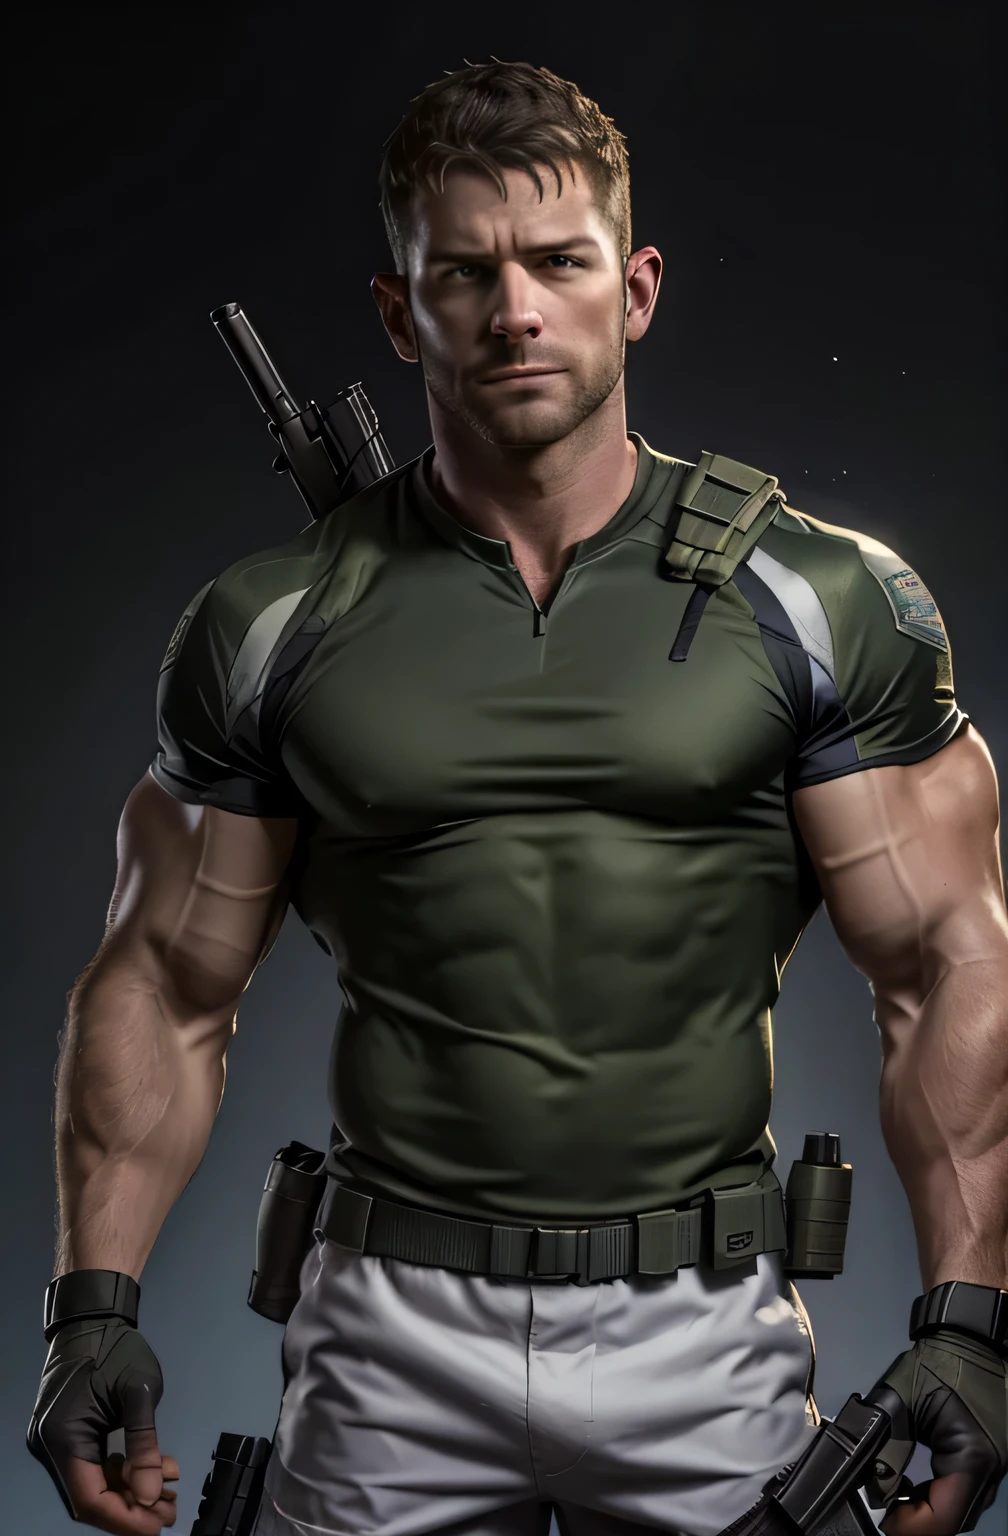 1人, 獨自的, 35岁, 克里斯·雷德菲爾德, 穿著綠色T卹, 嚴肅的臉, 看著相機, 肩膀白色，肩部有 bsaa 标志, 军事战术制服, 裝置, (2手拿手槍), 又高又壯, 二头肌, 腹肌, 胸部, 最好的品質, 傑作, 高解析度:1.2, 上身照, 漆黑的走廊，无背景